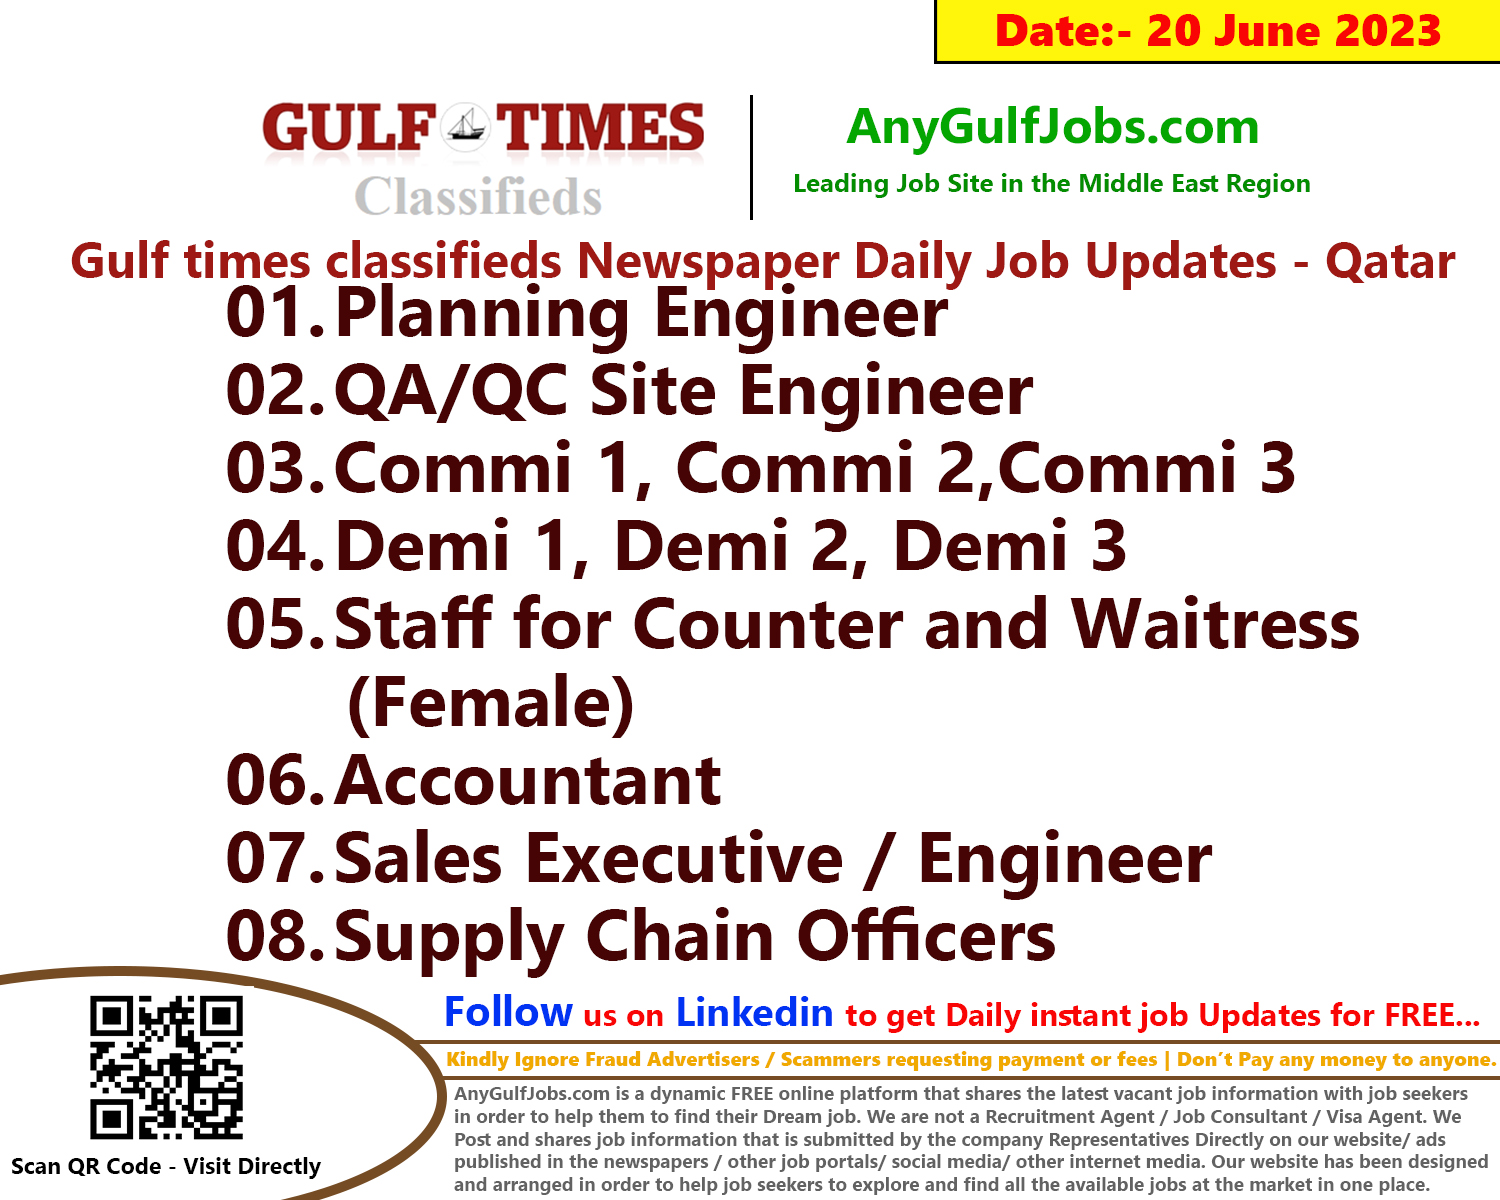 Gulf times classifieds Job Vacancies Qatar - 20 June 2023